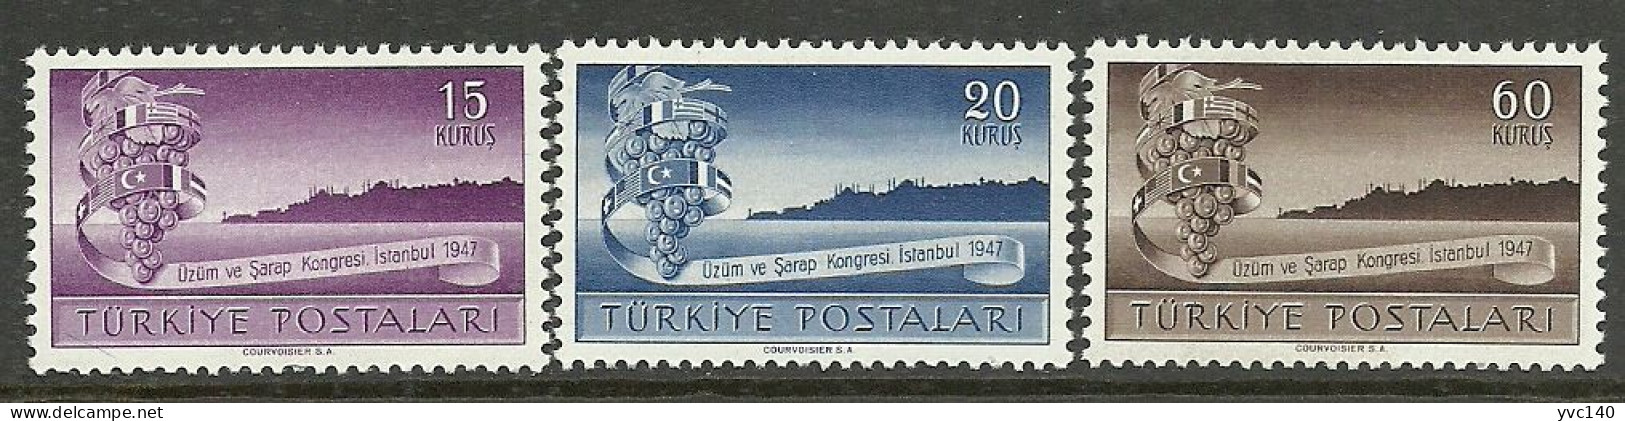 Turkey; 1947 3rd International Vintners' Congress (Complete Set) MNH** - Ongebruikt